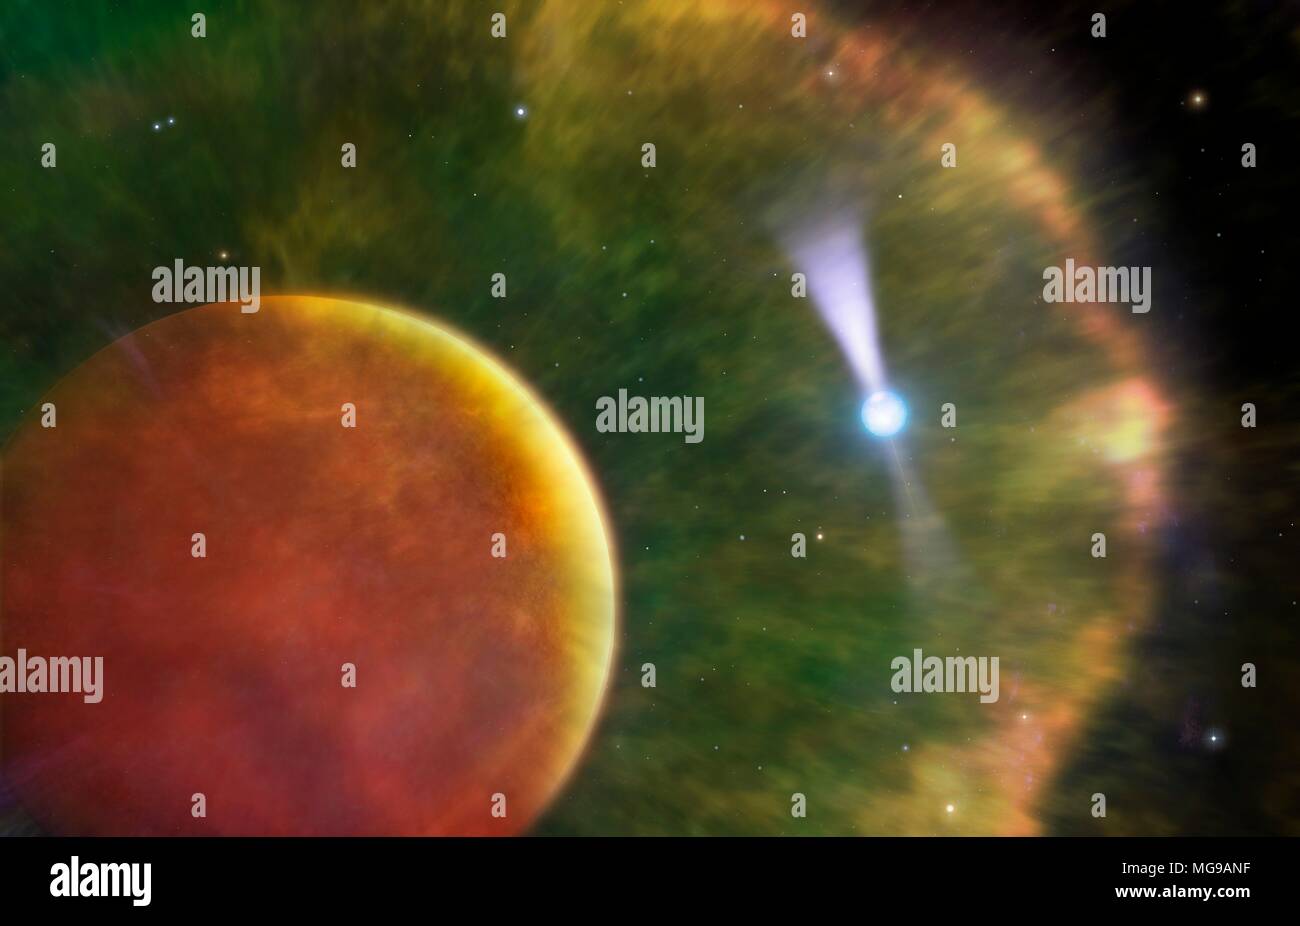 Illustrazione della cosiddetta Black Widow Pulsar. Questa è una pulsar (a destra), una rapida rotazione stella di neutroni, scoperto nel 1988, che è in orbita intorno a una nana bruna (sinistra). Il nome black widow è applicata perché il compagno per la pulsar è stata distrutta da esso. Brown nani sono oggetti che si formano come fanno le stelle, ma che non raggiungono il nucleo delle temperature necessarie per fondere l'idrogeno in elio, come nelle vere stelle. Gli astronomi hanno rilevato un bow-shock intorno alla nana bruna, creato come radiazione dalla pulsar avvolge la nana bruna. Foto Stock